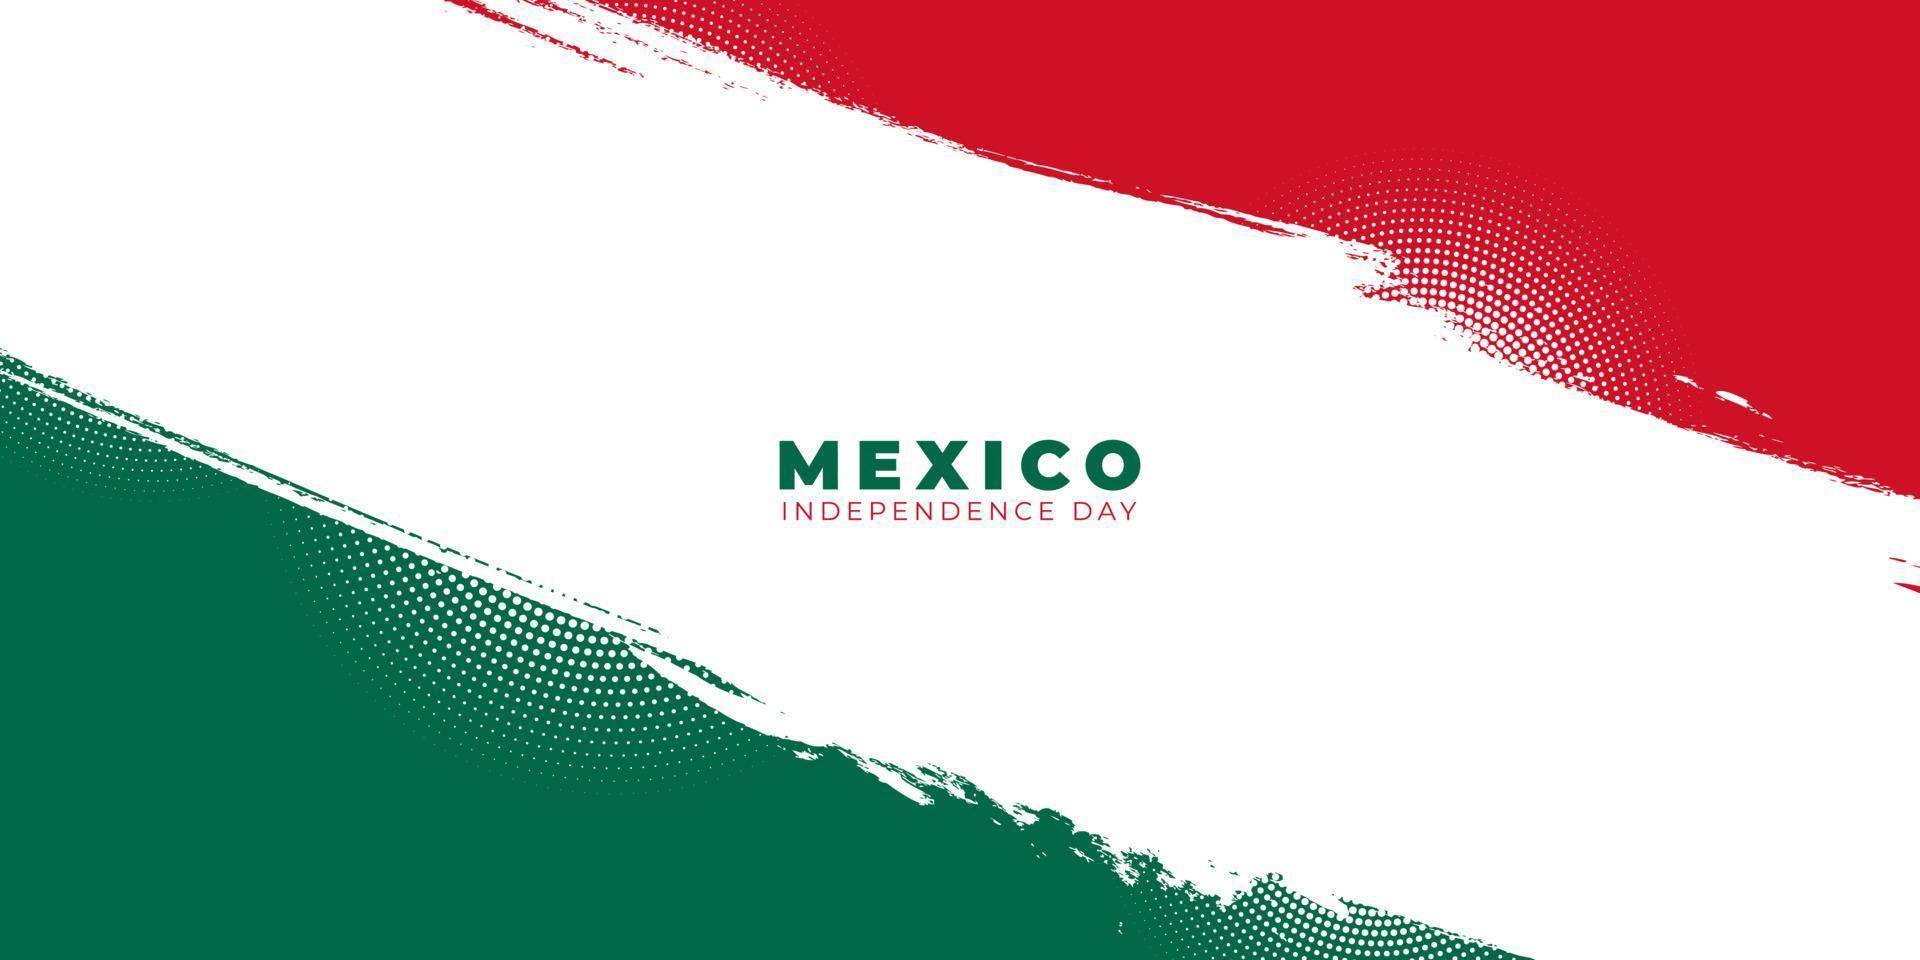 de onafhankelijkheidsdag van mexico met rood, wit en groen grungeontwerp als achtergrond vector